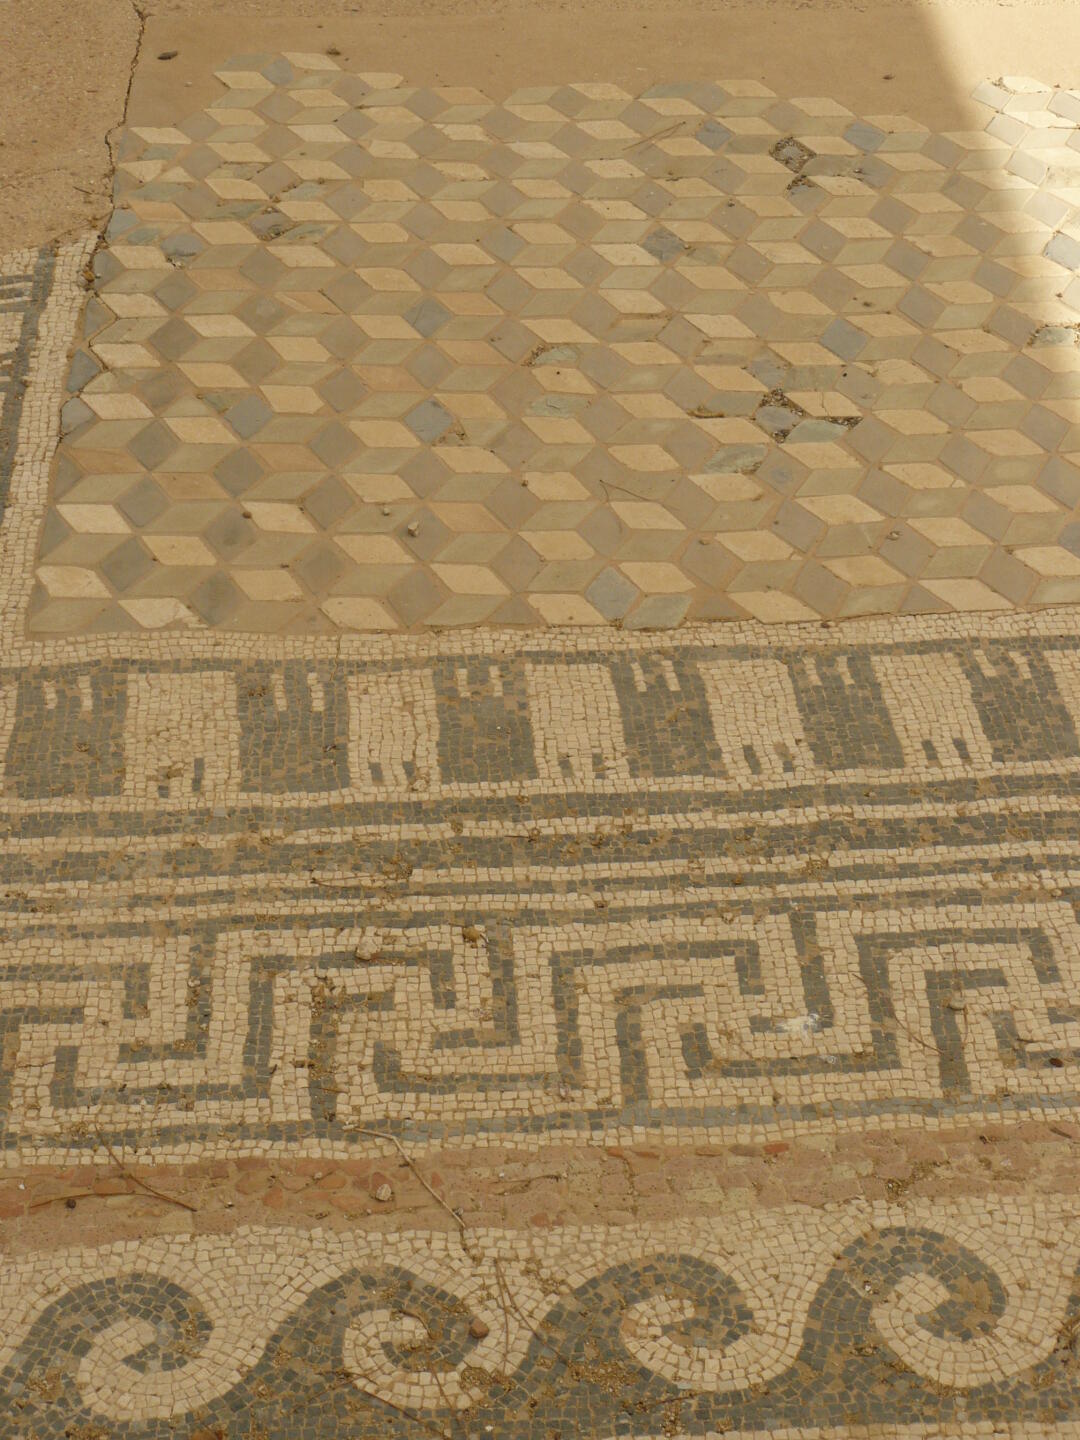 Fußbodenmosaik im hellenistisch-römischen Viertel in Agrigento.